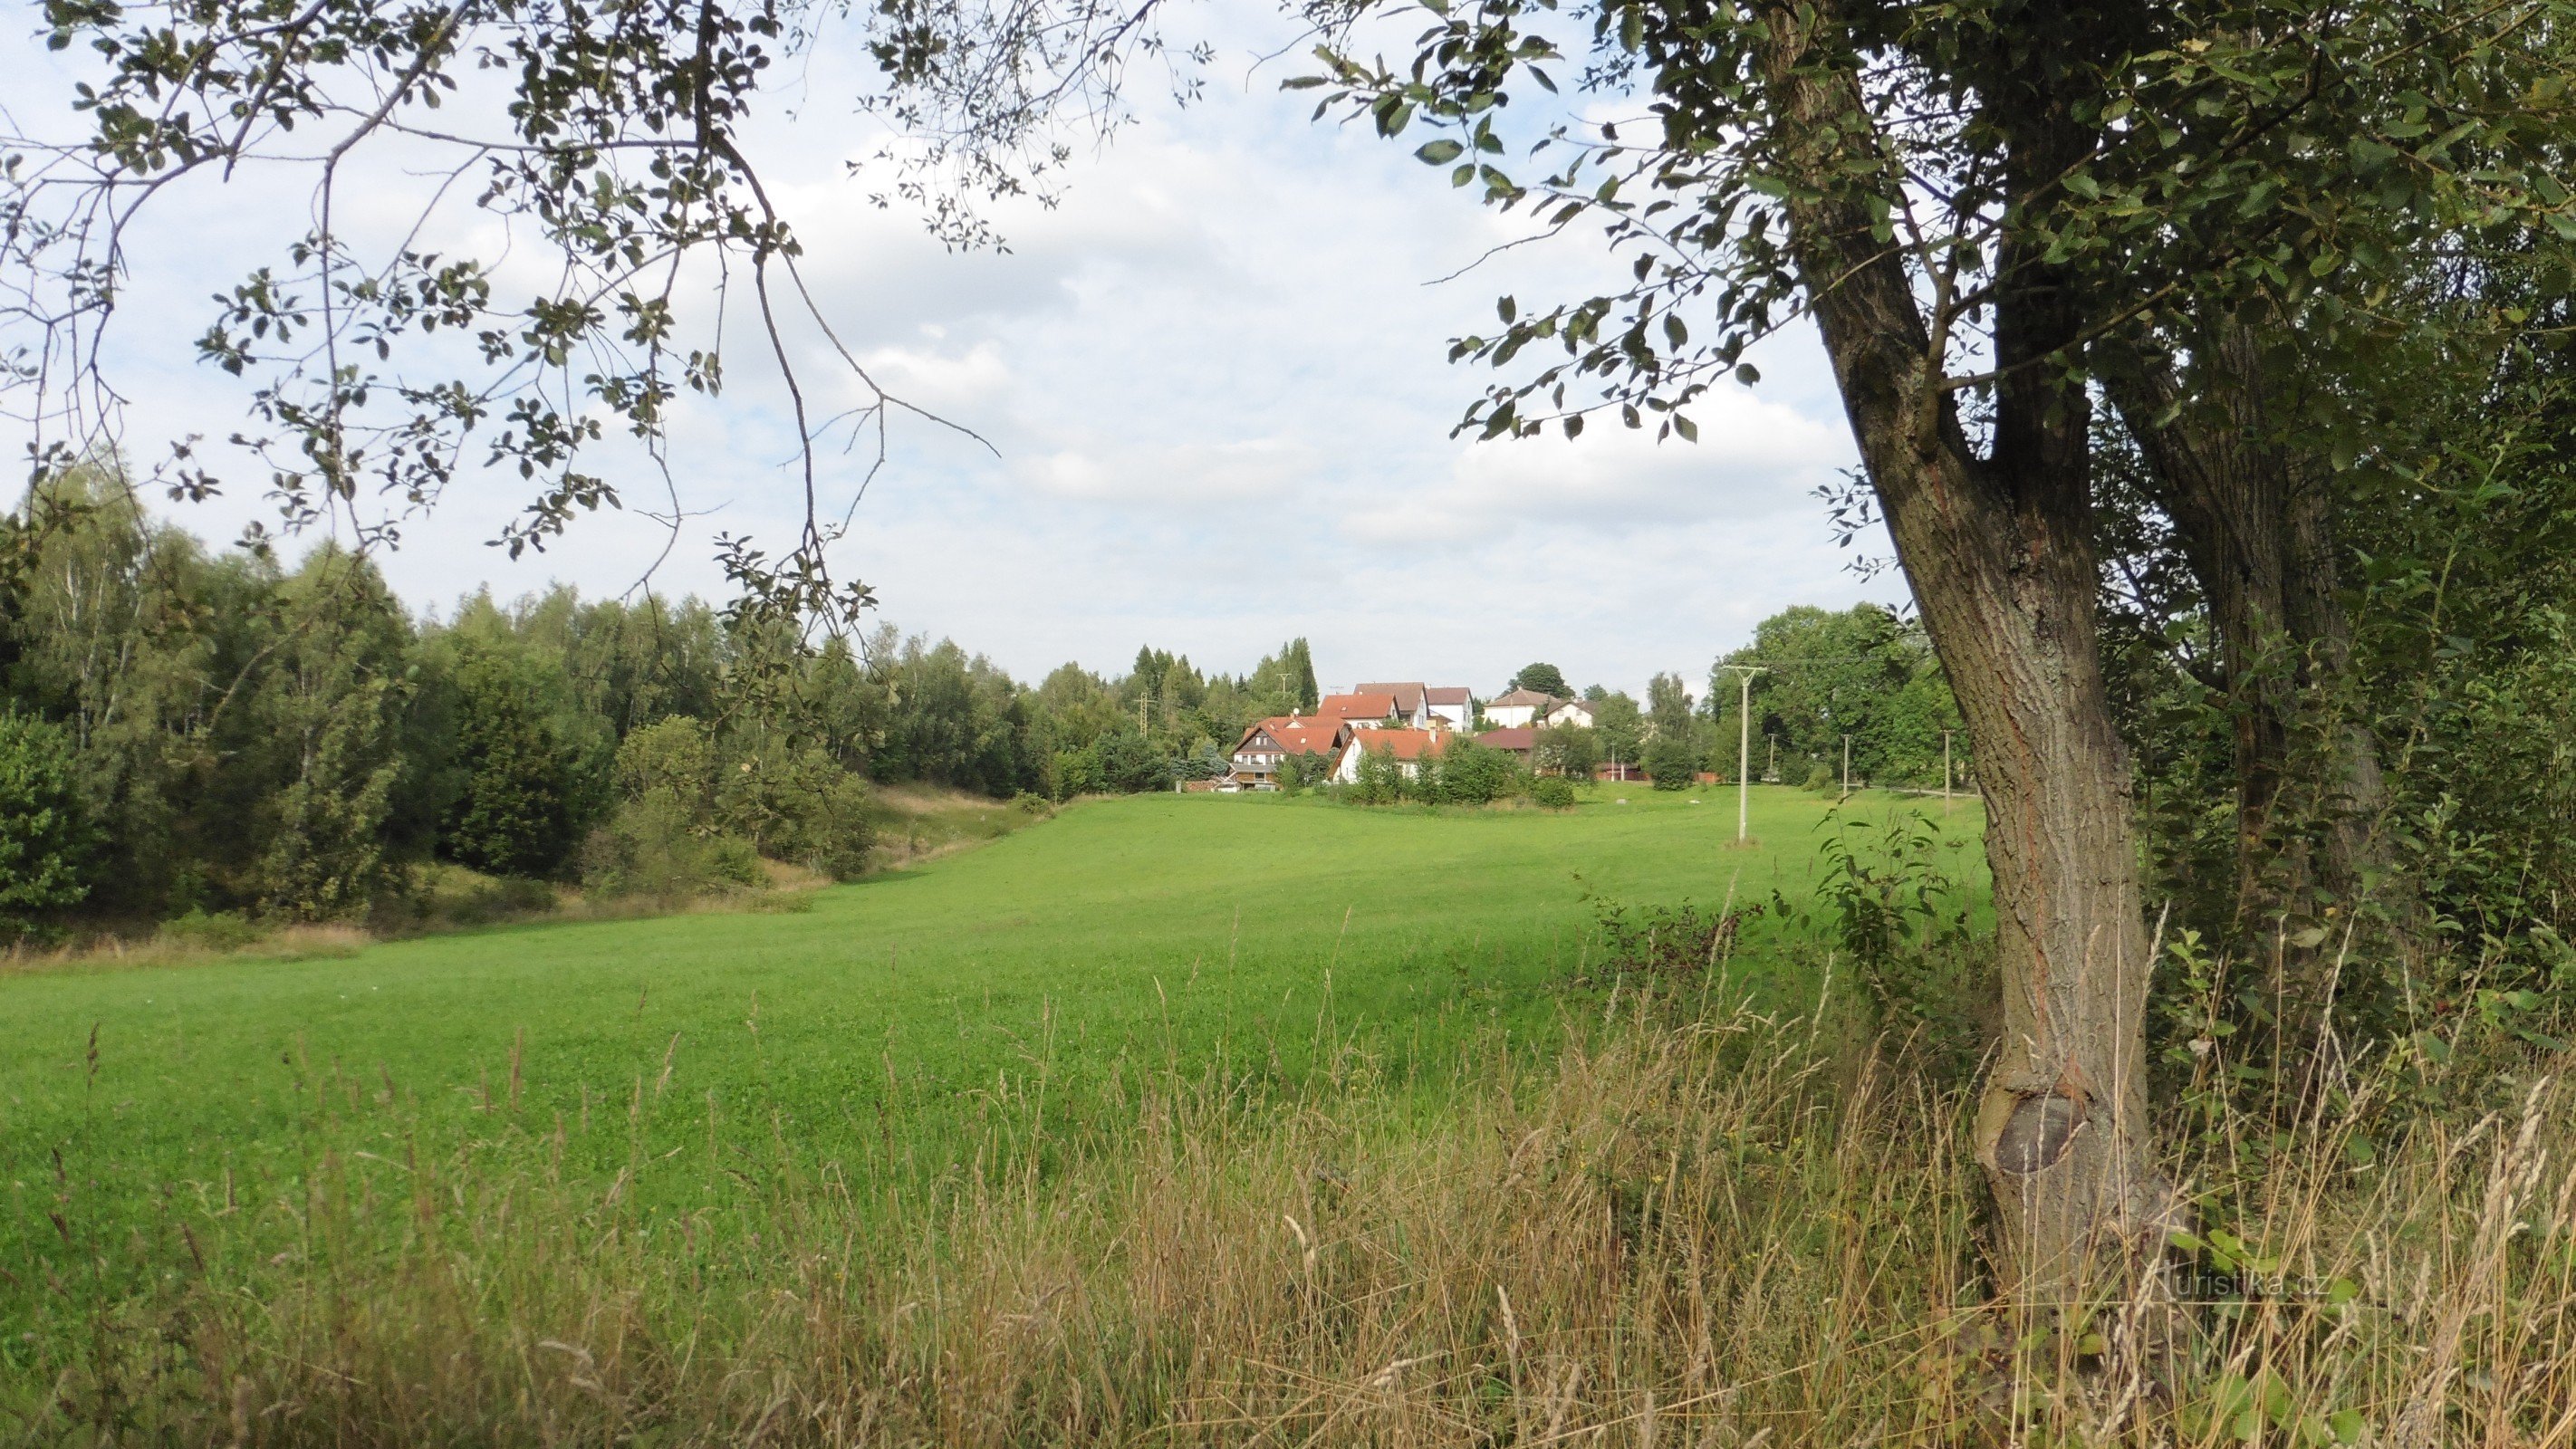 Kvasetice, nhìn từ con đường từ Michalovice, bên trái một khu rừng nơi có một ngôi mộ